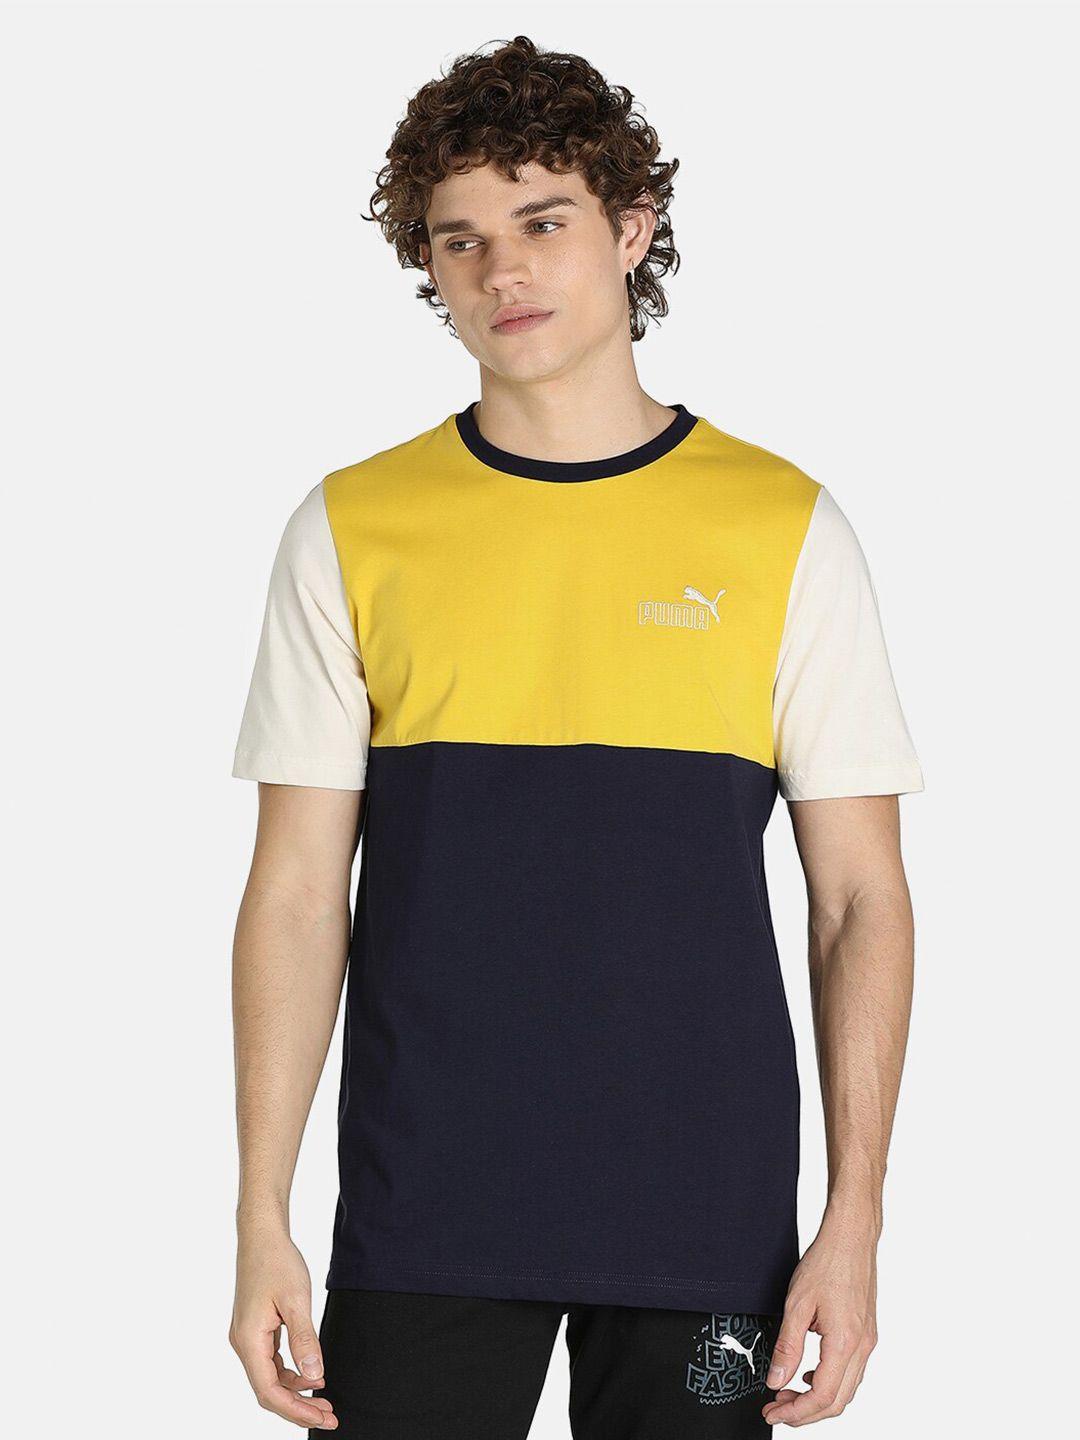 puma men navy blue & yellow 1der kl rahul core t-shirt